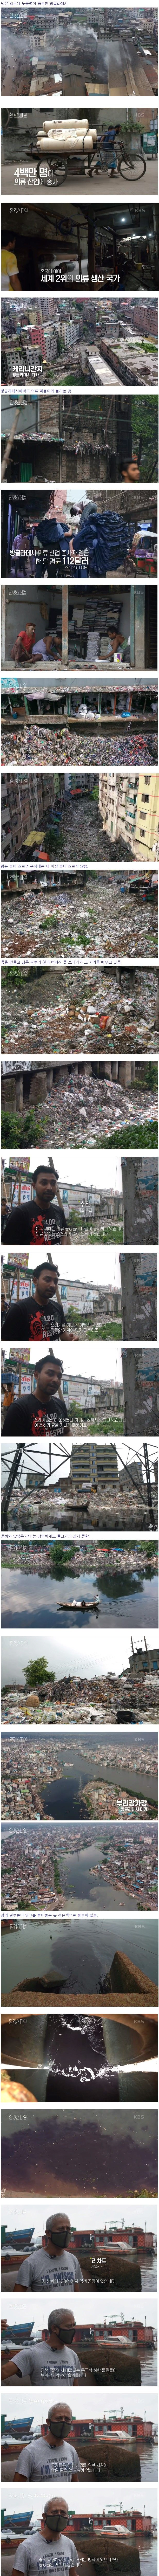 의류 공장으로 더럽혀진 방글라데시. jpg